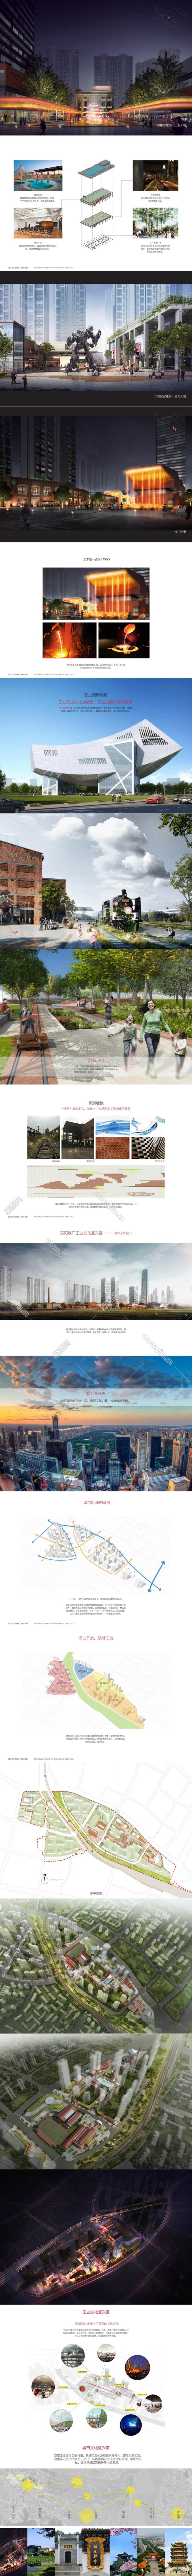 8 武汉万科汉钢项目总体景观规划_00.jpg